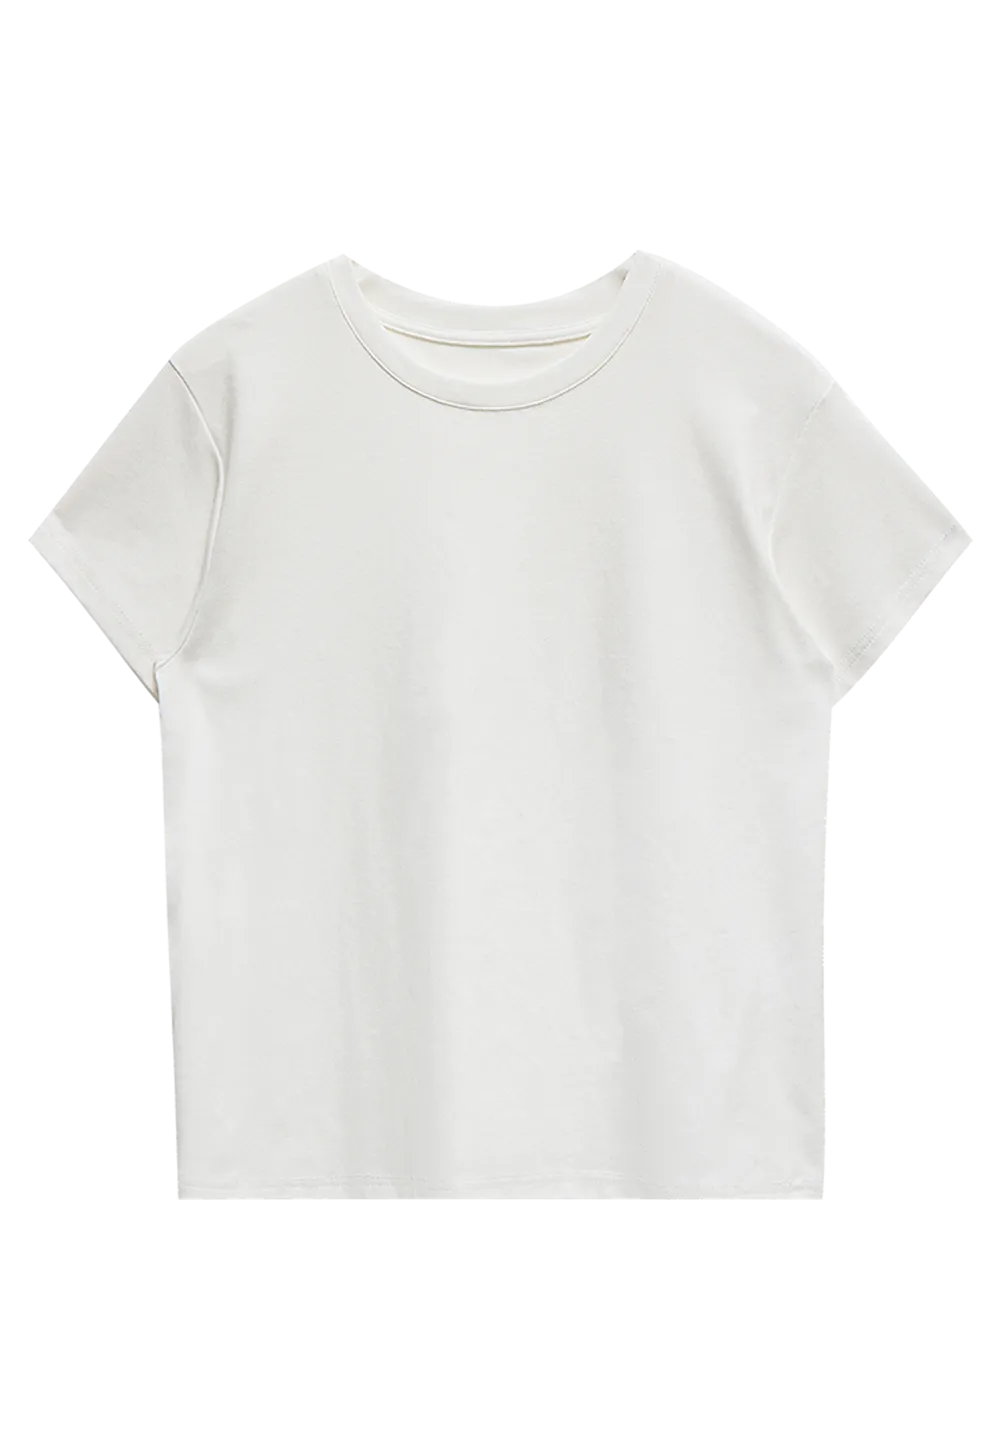 tshirts shirts for women